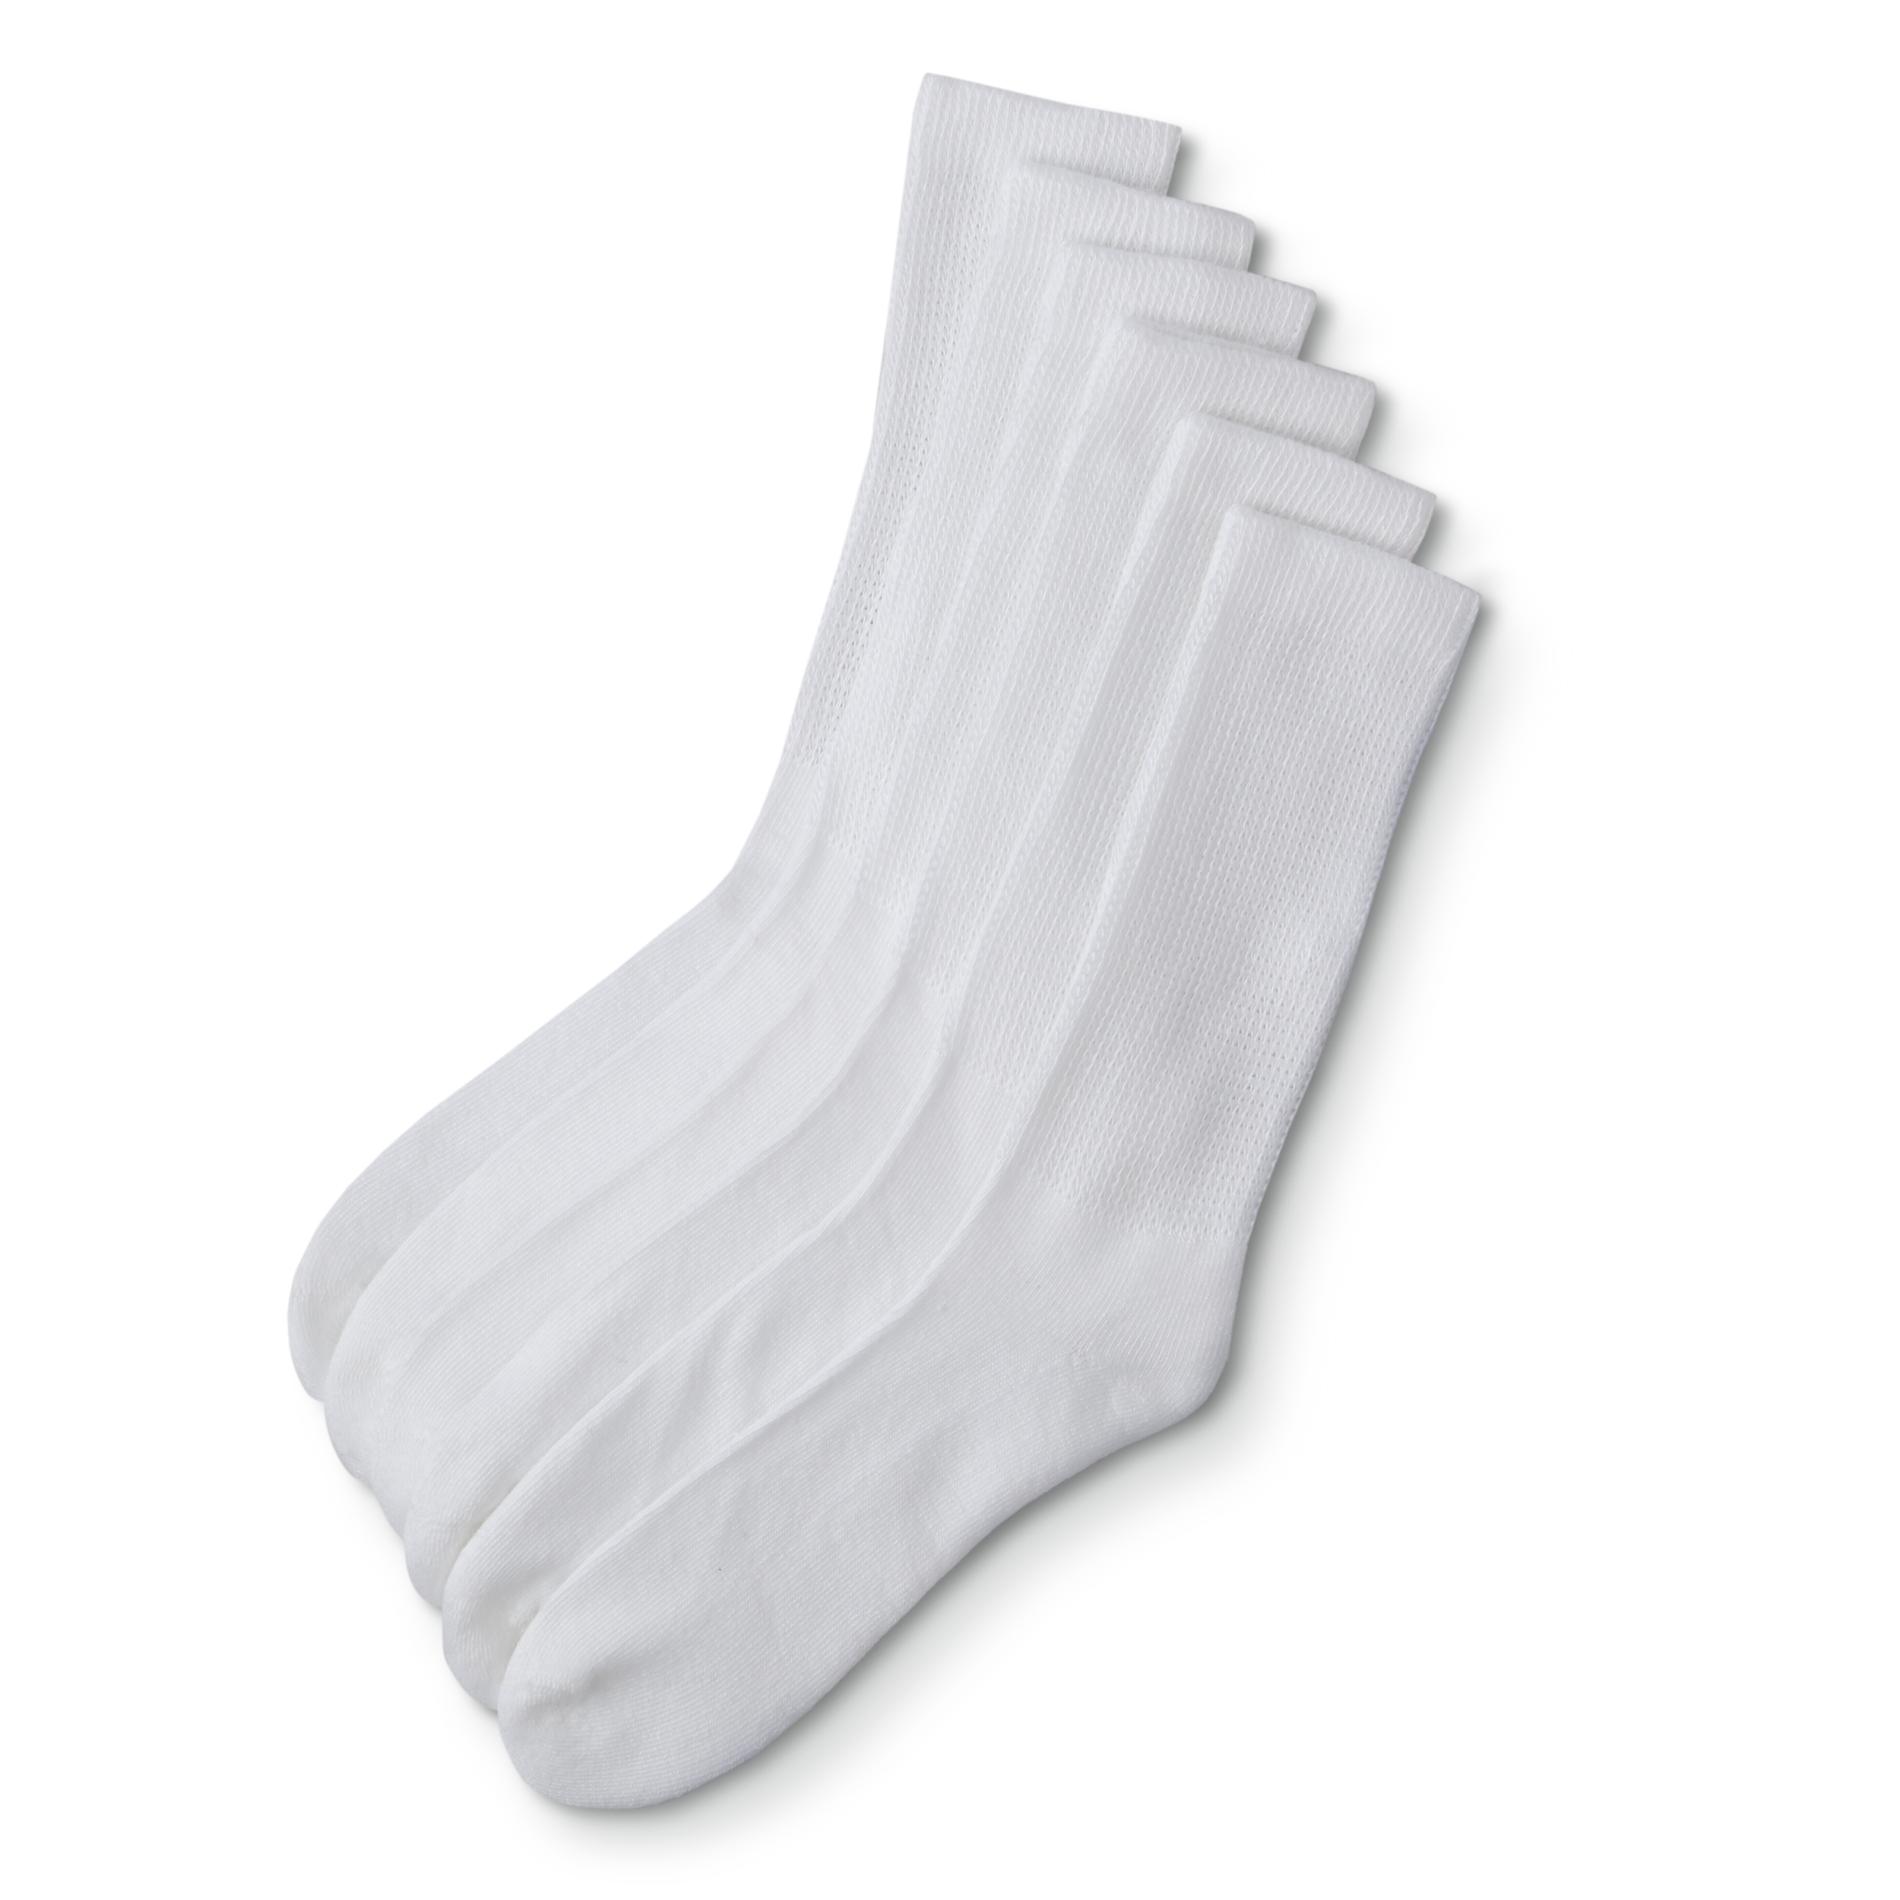 Simply Styled Men's 6-Pairs Diabetic Crew Socks